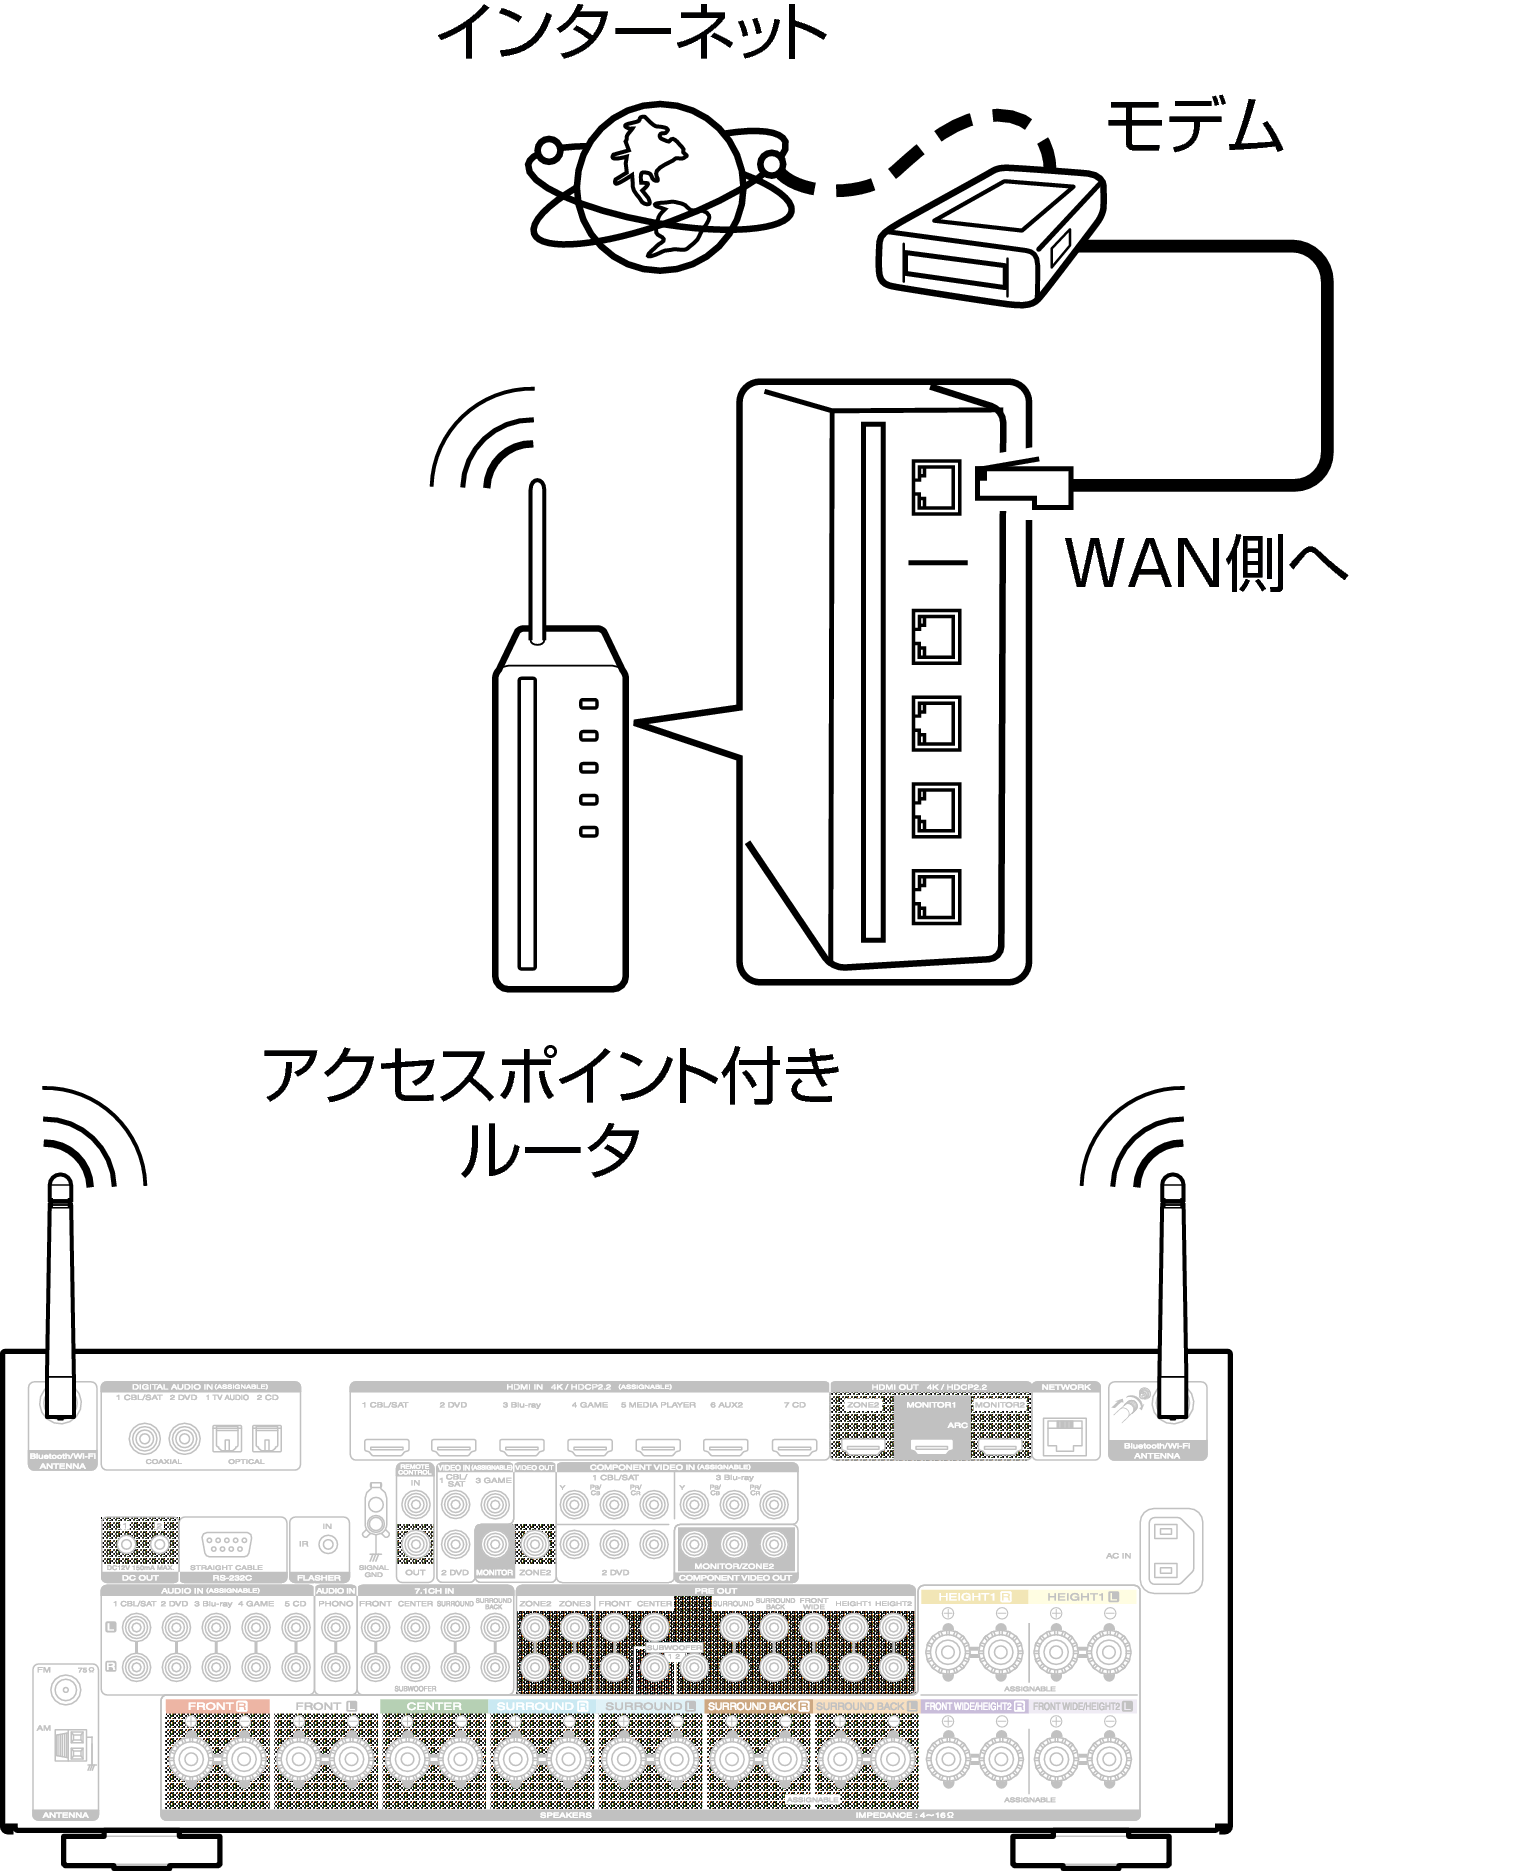 Conne Wireless 7010N